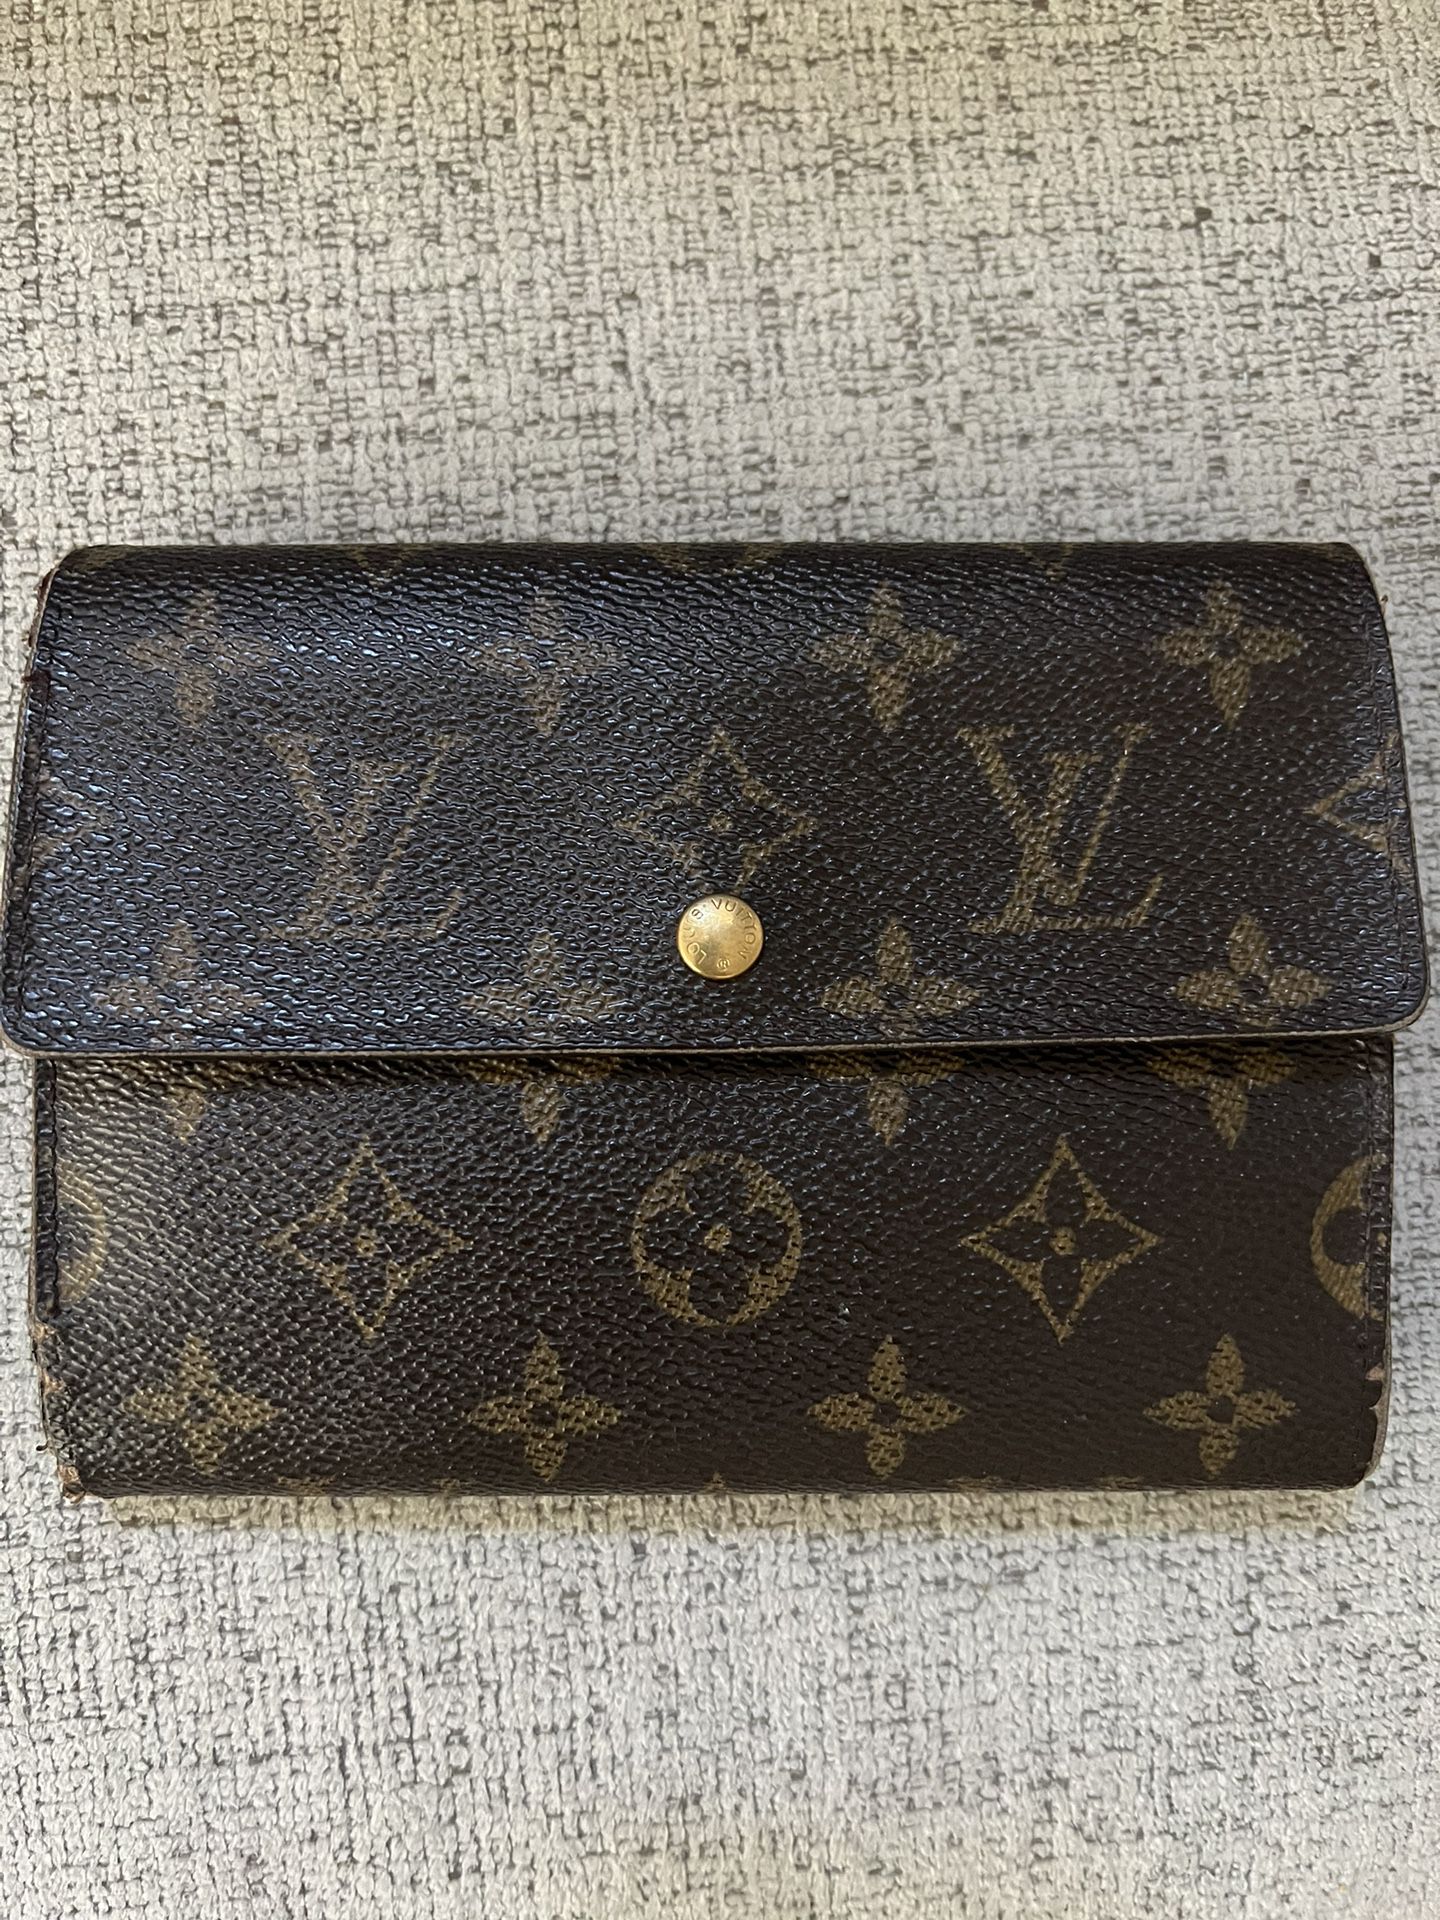 Vintage & second hand Louis Vuitton wallets